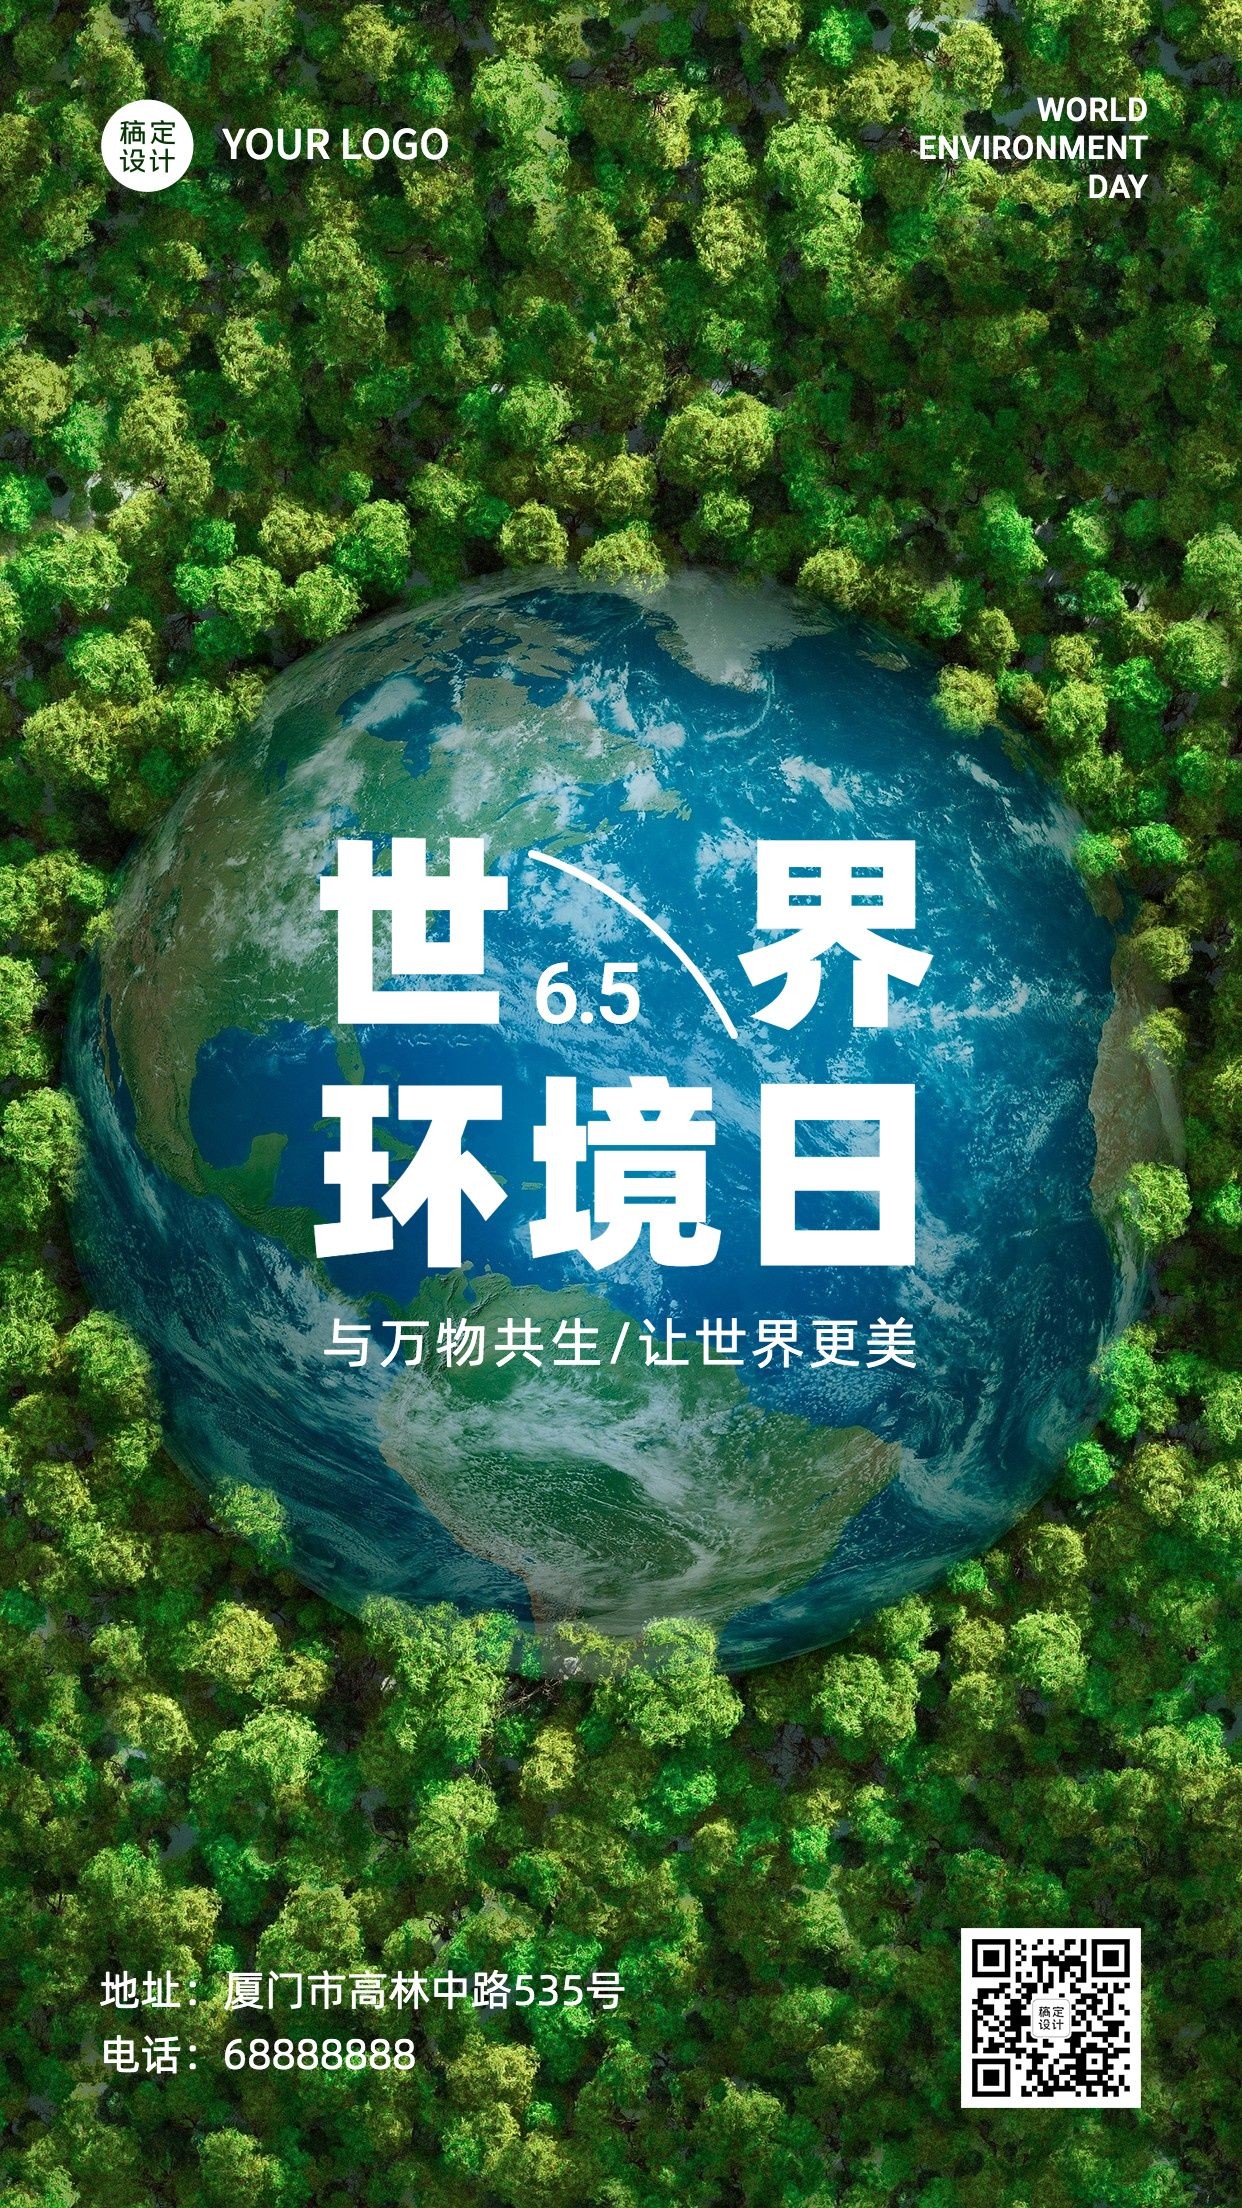 世界环境日保护生态资源手机海报预览效果